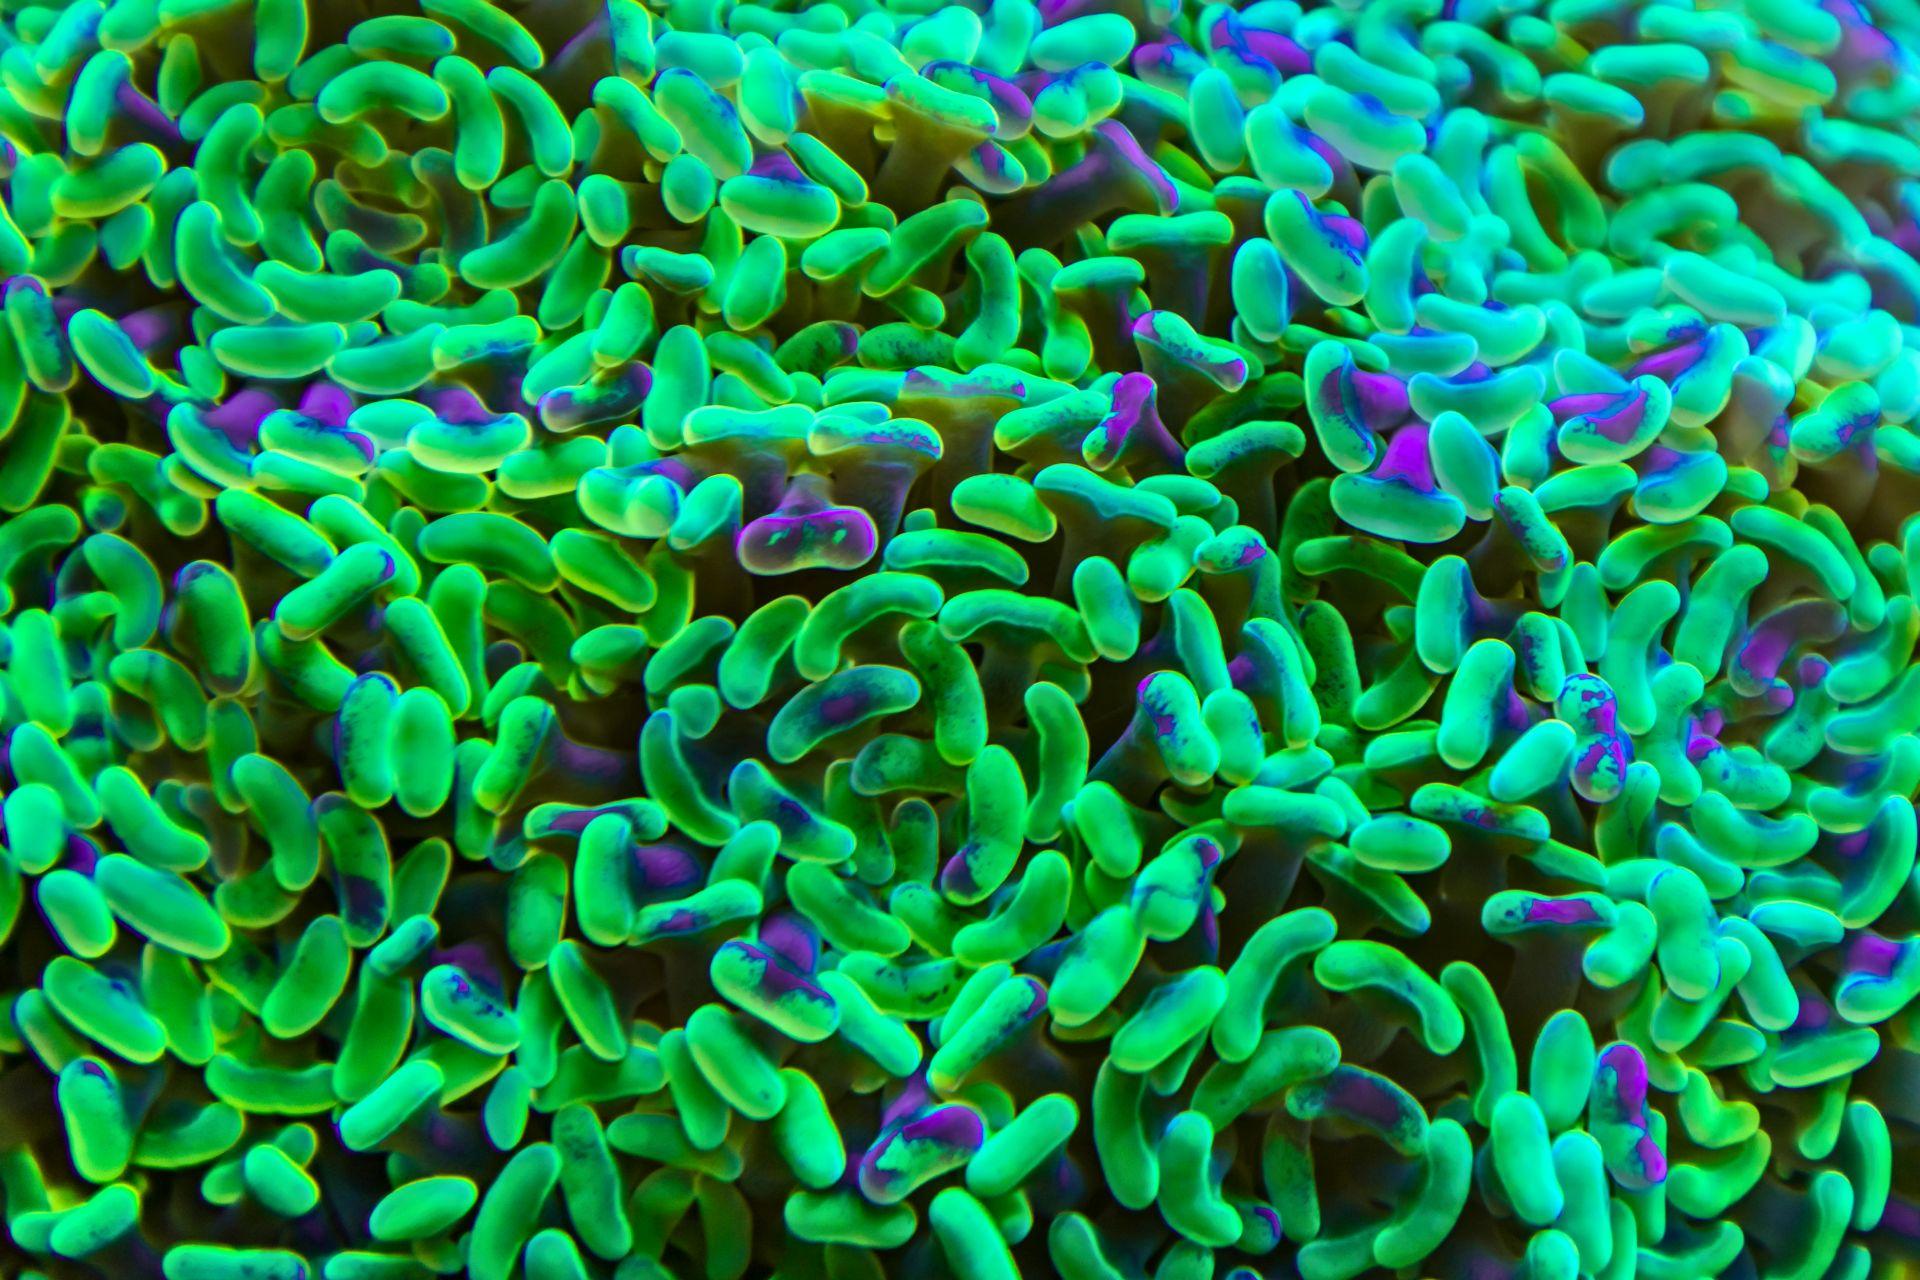 Neongrüne und lila Korallen, die wie Bakterien aussehen